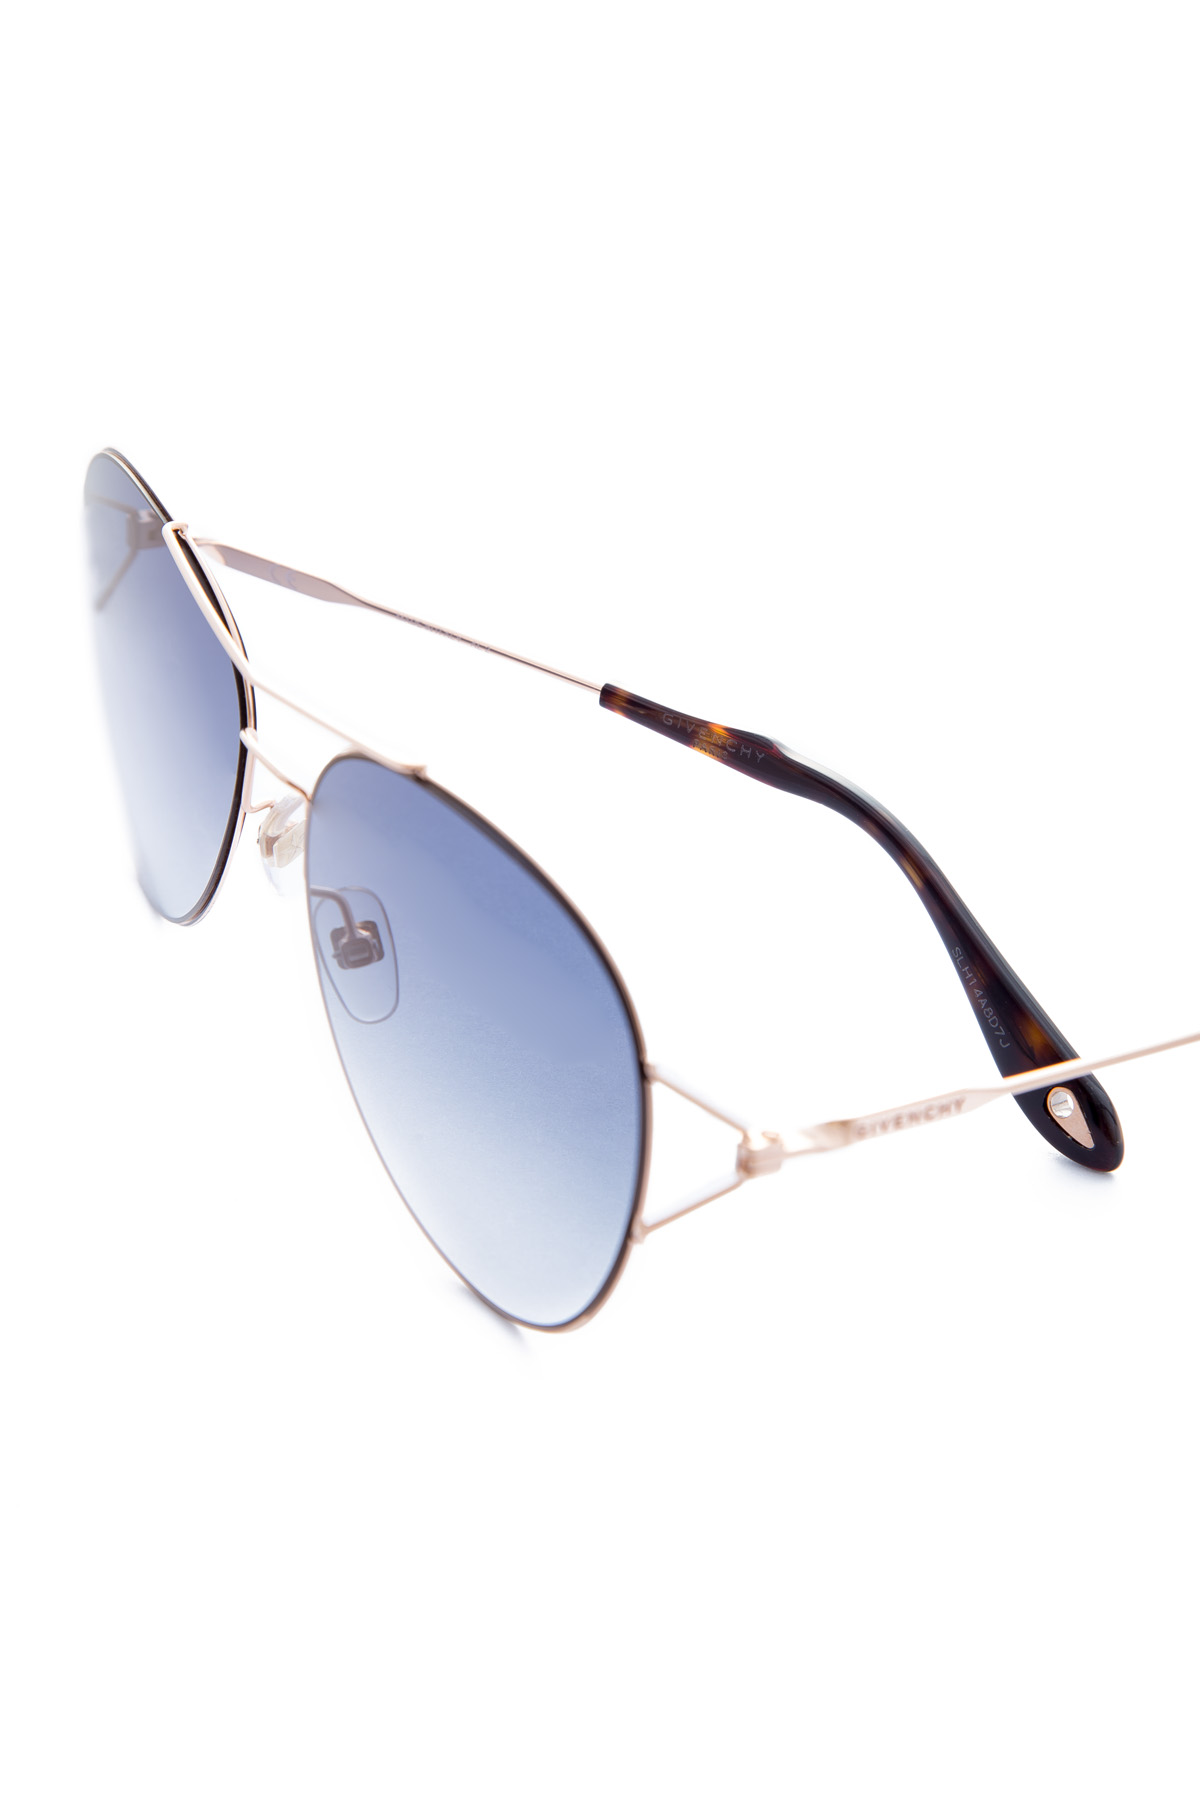 Очки-авиаторы с перемычками из металла золотистого цвета GIVENCHY (sunglasses), размер 36 - фото 4